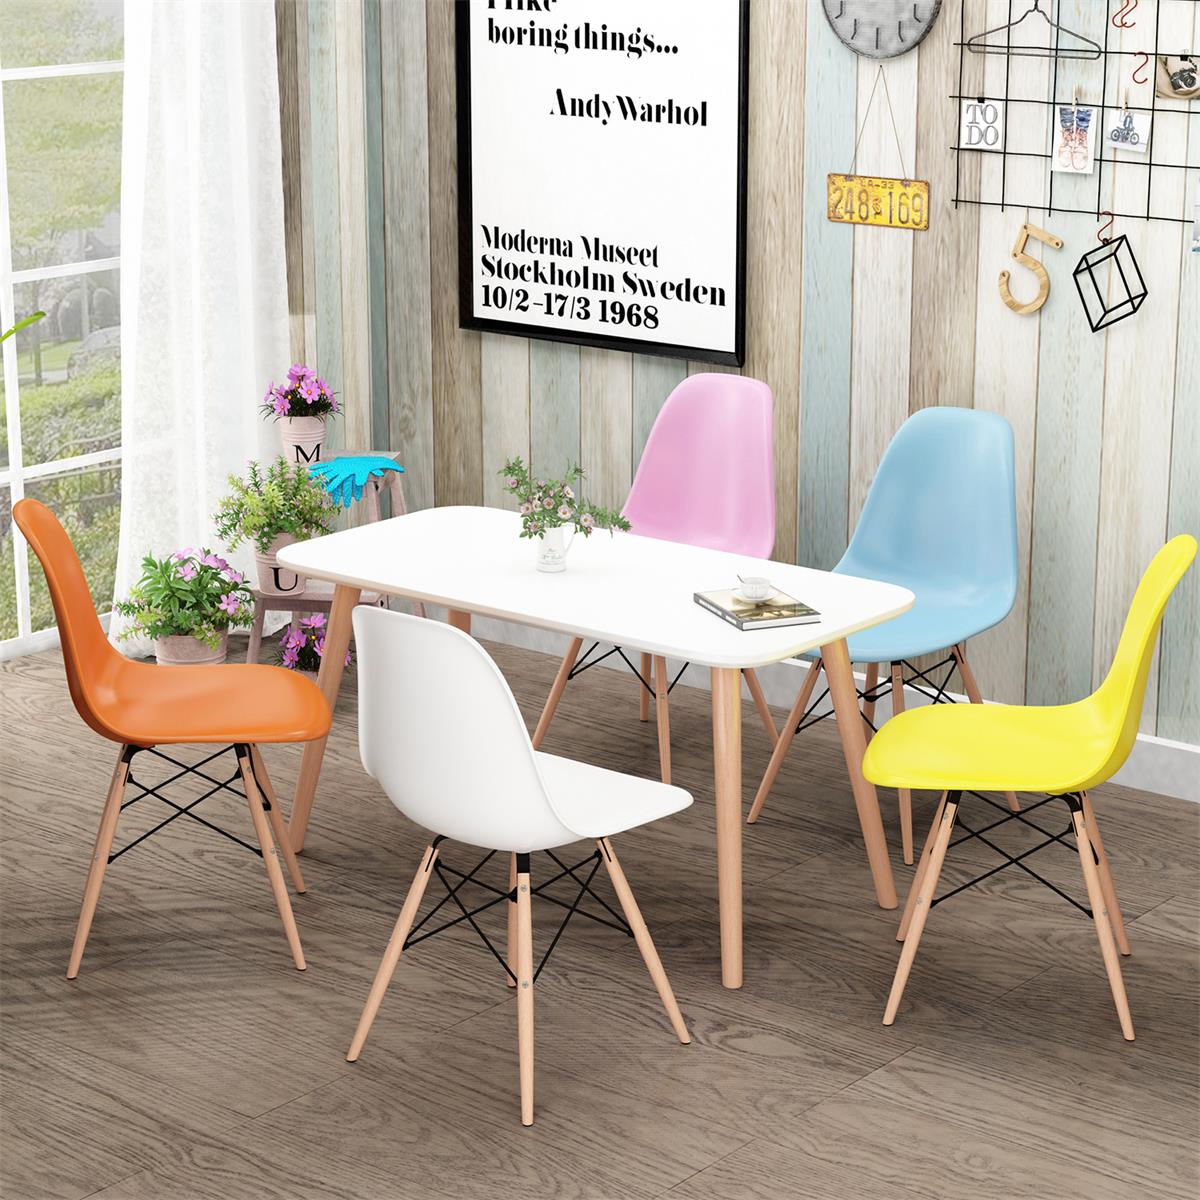 椅子現代簡約北歐椅創意休閑辦公椅餐椅家用靠背成人書桌椅